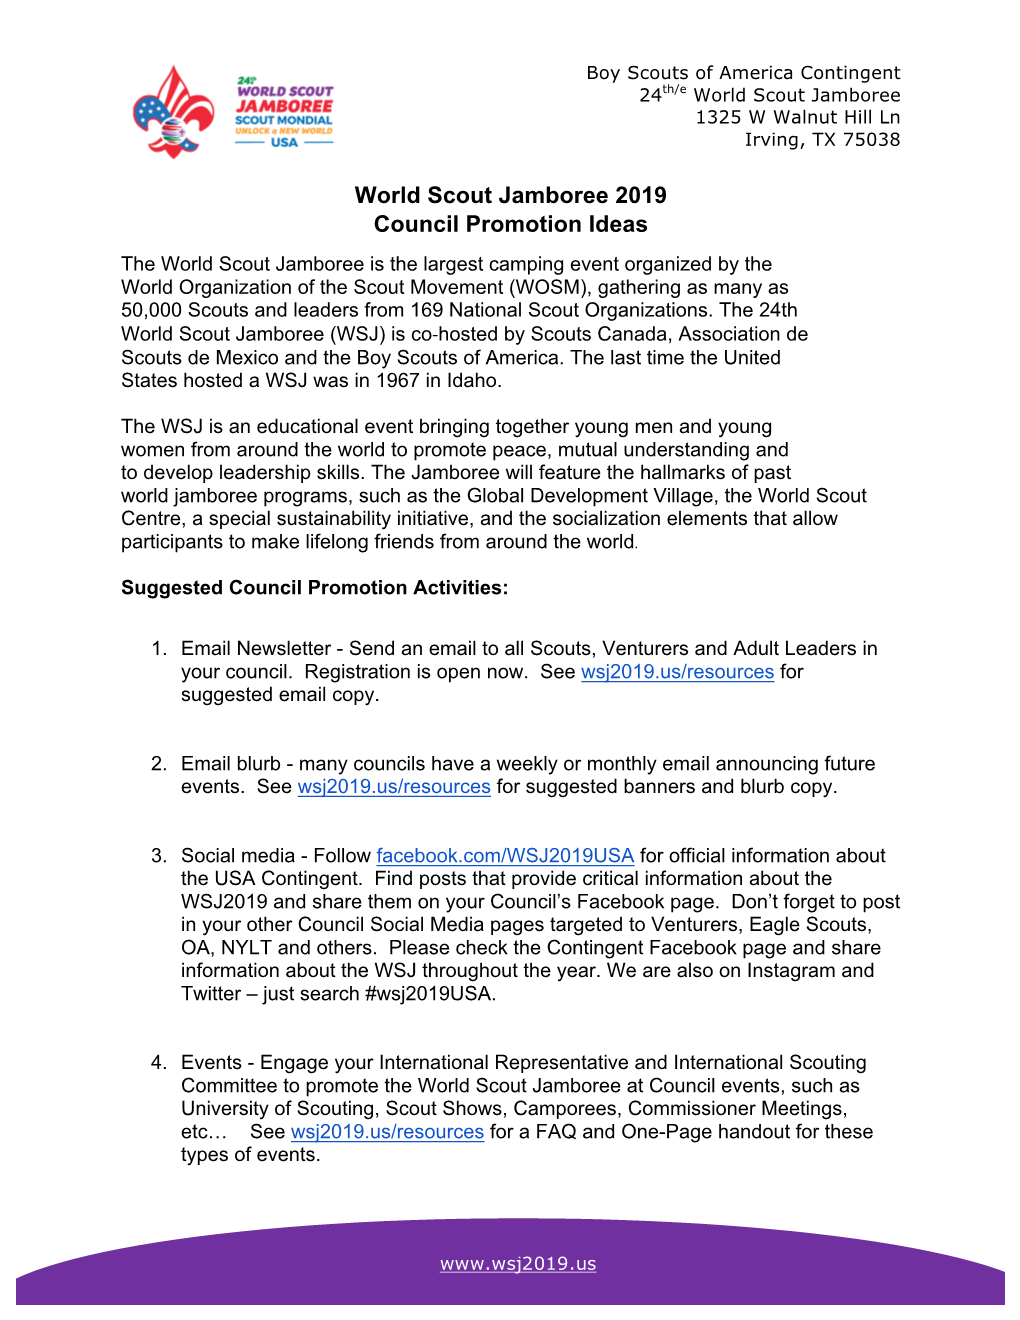 World Scout Jamboree 2019 Council Promotion Ideas